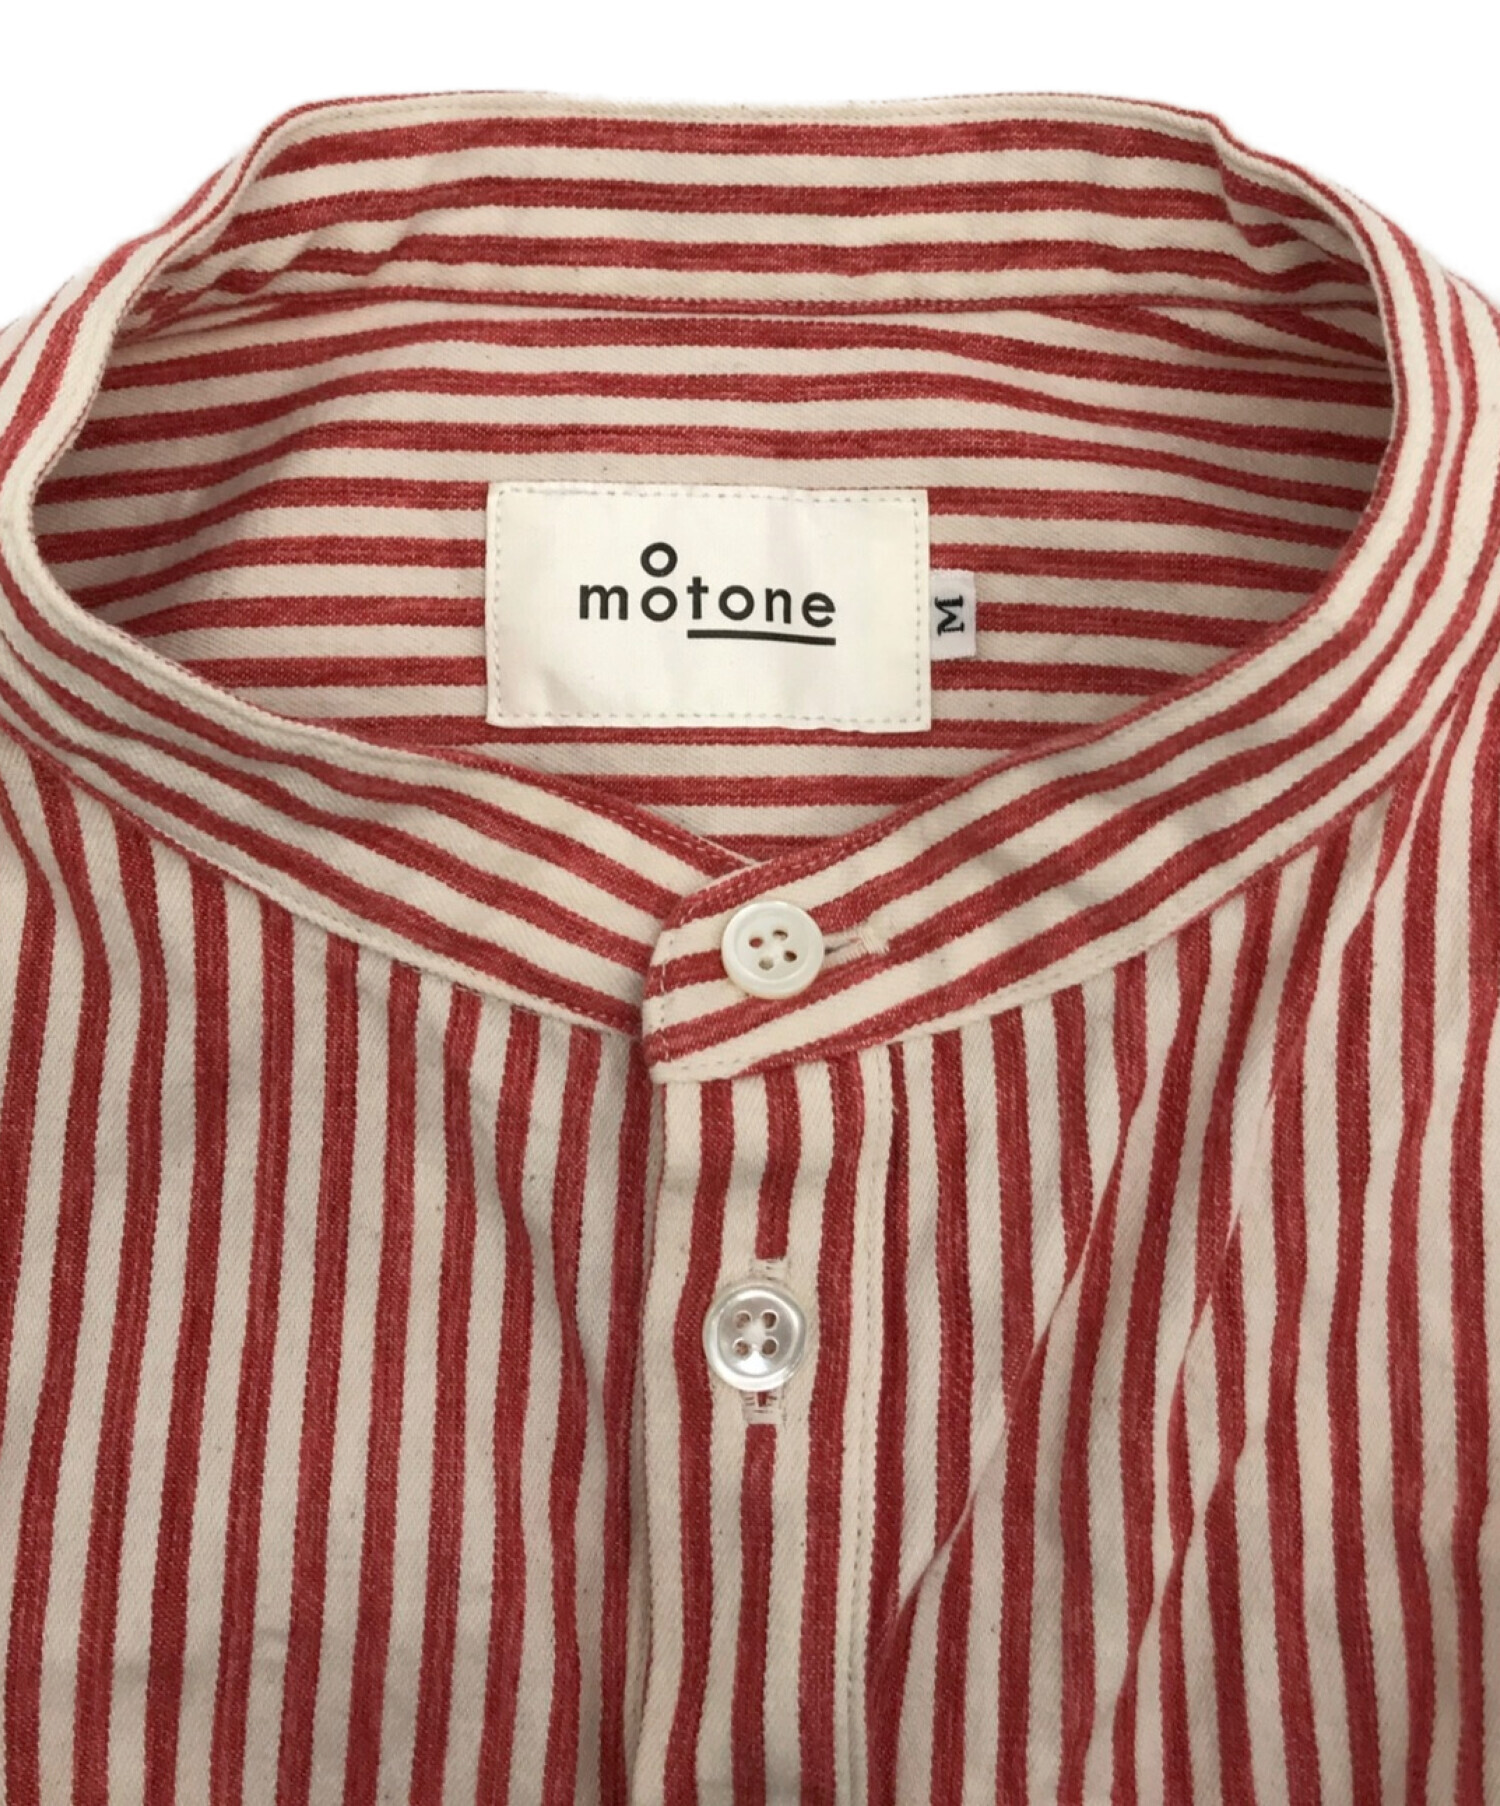 motone (モートン) エンゲイシャツ/バンドカラーストライプシャツ レッド×ホワイト サイズ:M